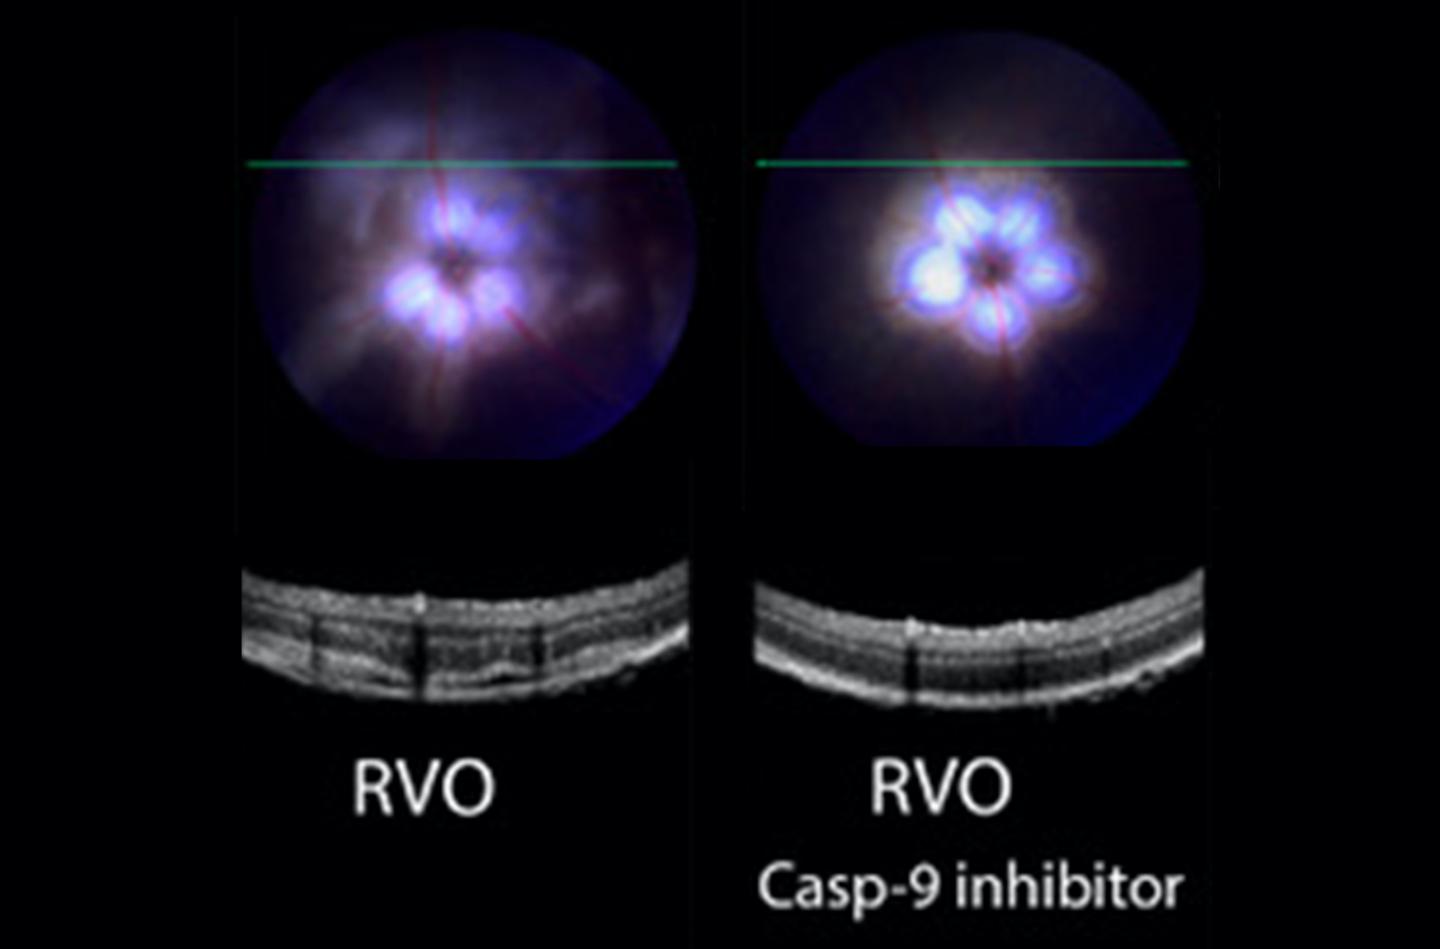 Caspase-9 inhibitor in retinal vein occlusion